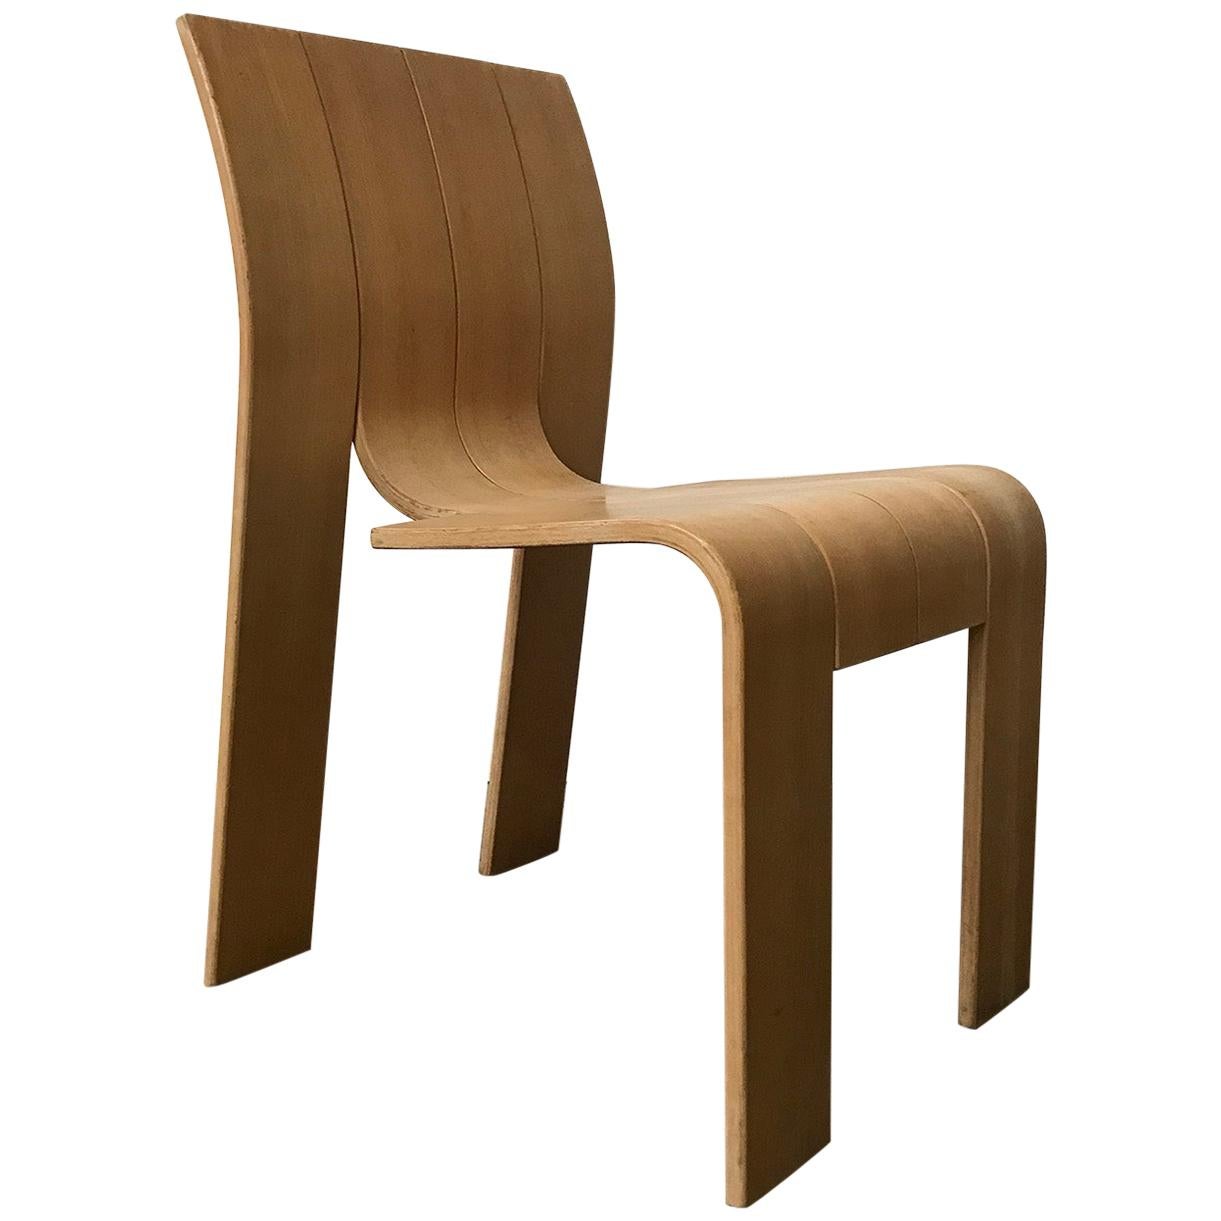 1974, Gijs Bakker, Castelijn, Varnished Stackable Bended Wood Strip Chair